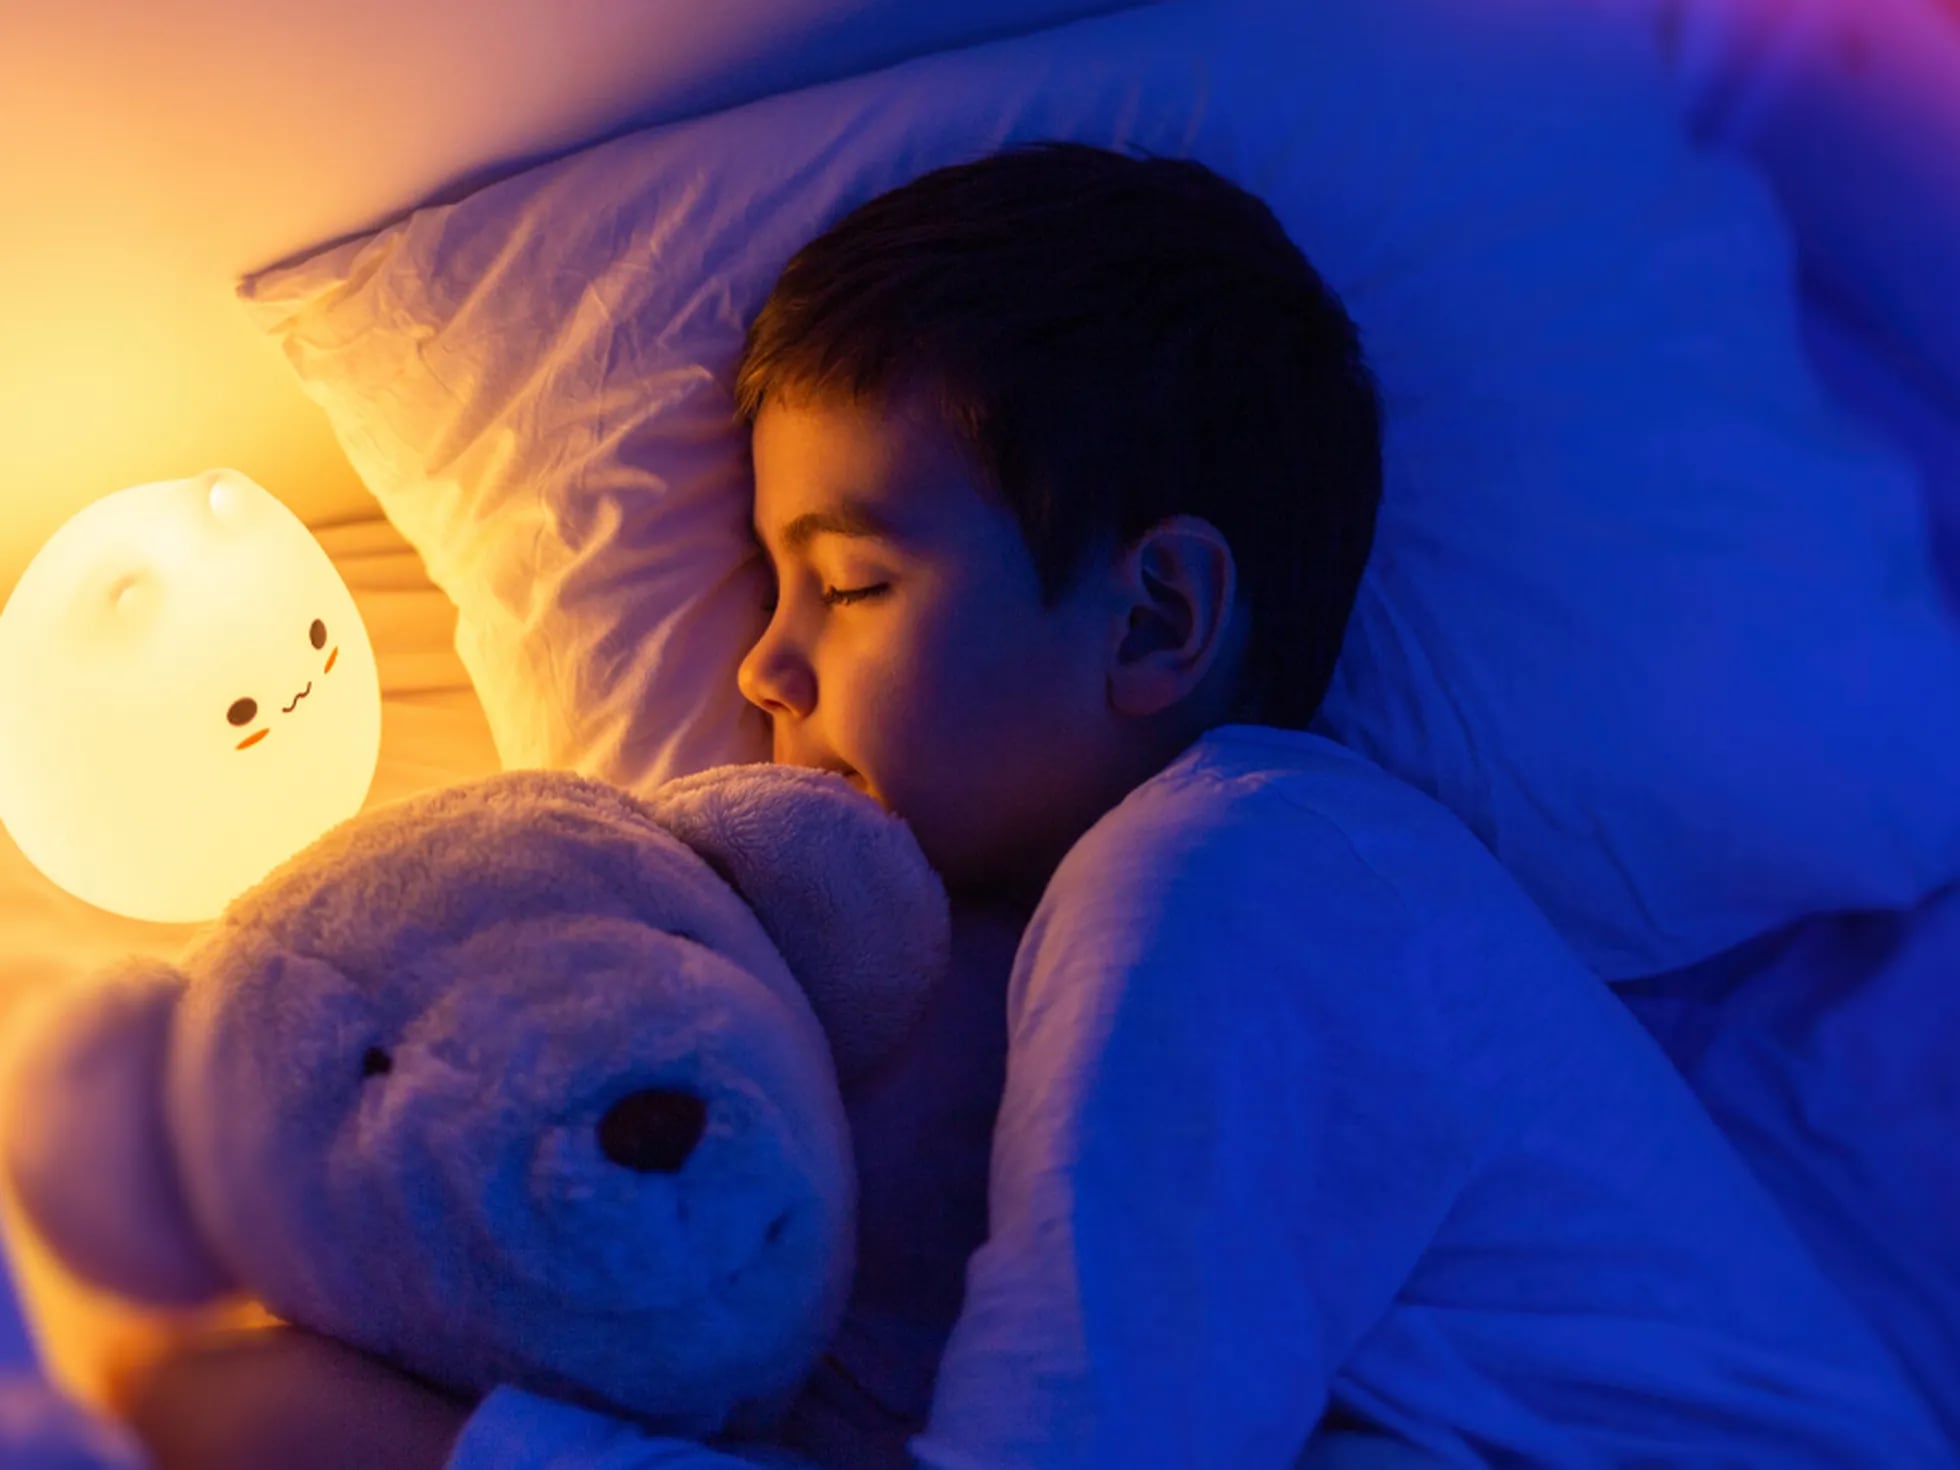 Los más vendidos: Mejor Lámparas Nocturnas Infantiles